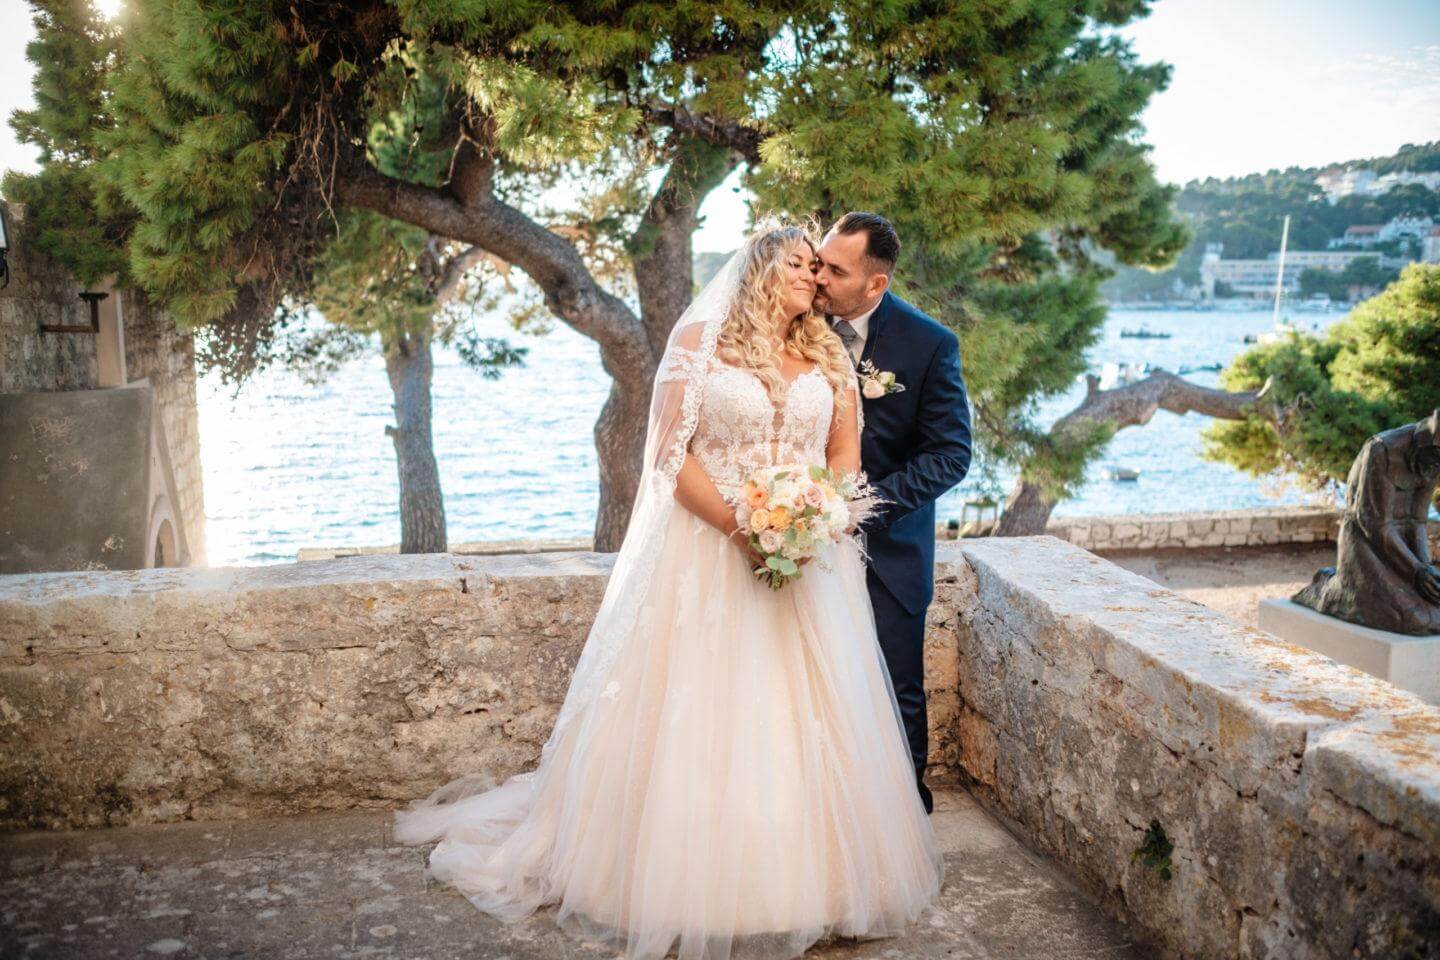 Hochzeit in Kroatien Brautpaar beim Shooting Wedding Kroatien, wedding in croatia,hochzeitsplanerin kroatien, hochzeit in kroatien